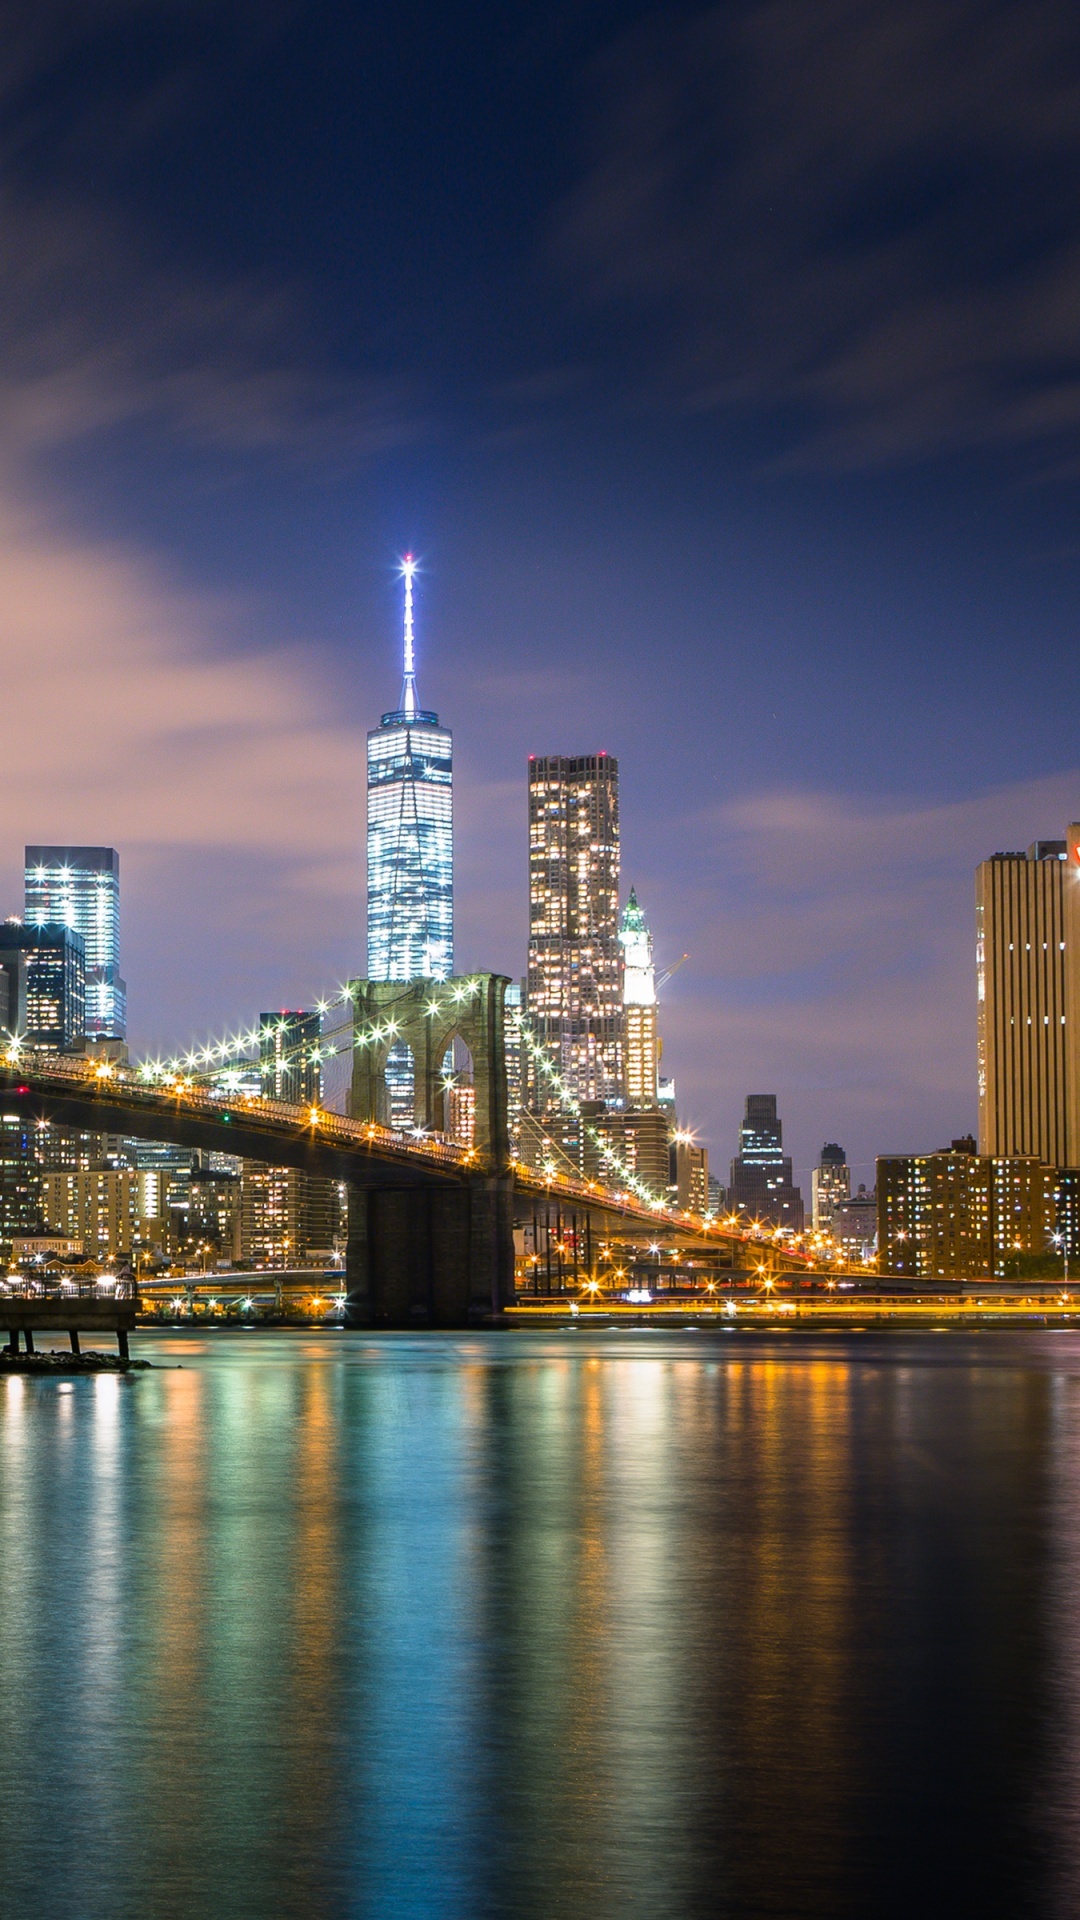 Brooklyn Bridge, 4K wallpaper, Cityscape, Night lights, 1080x1920 Full HD Phone